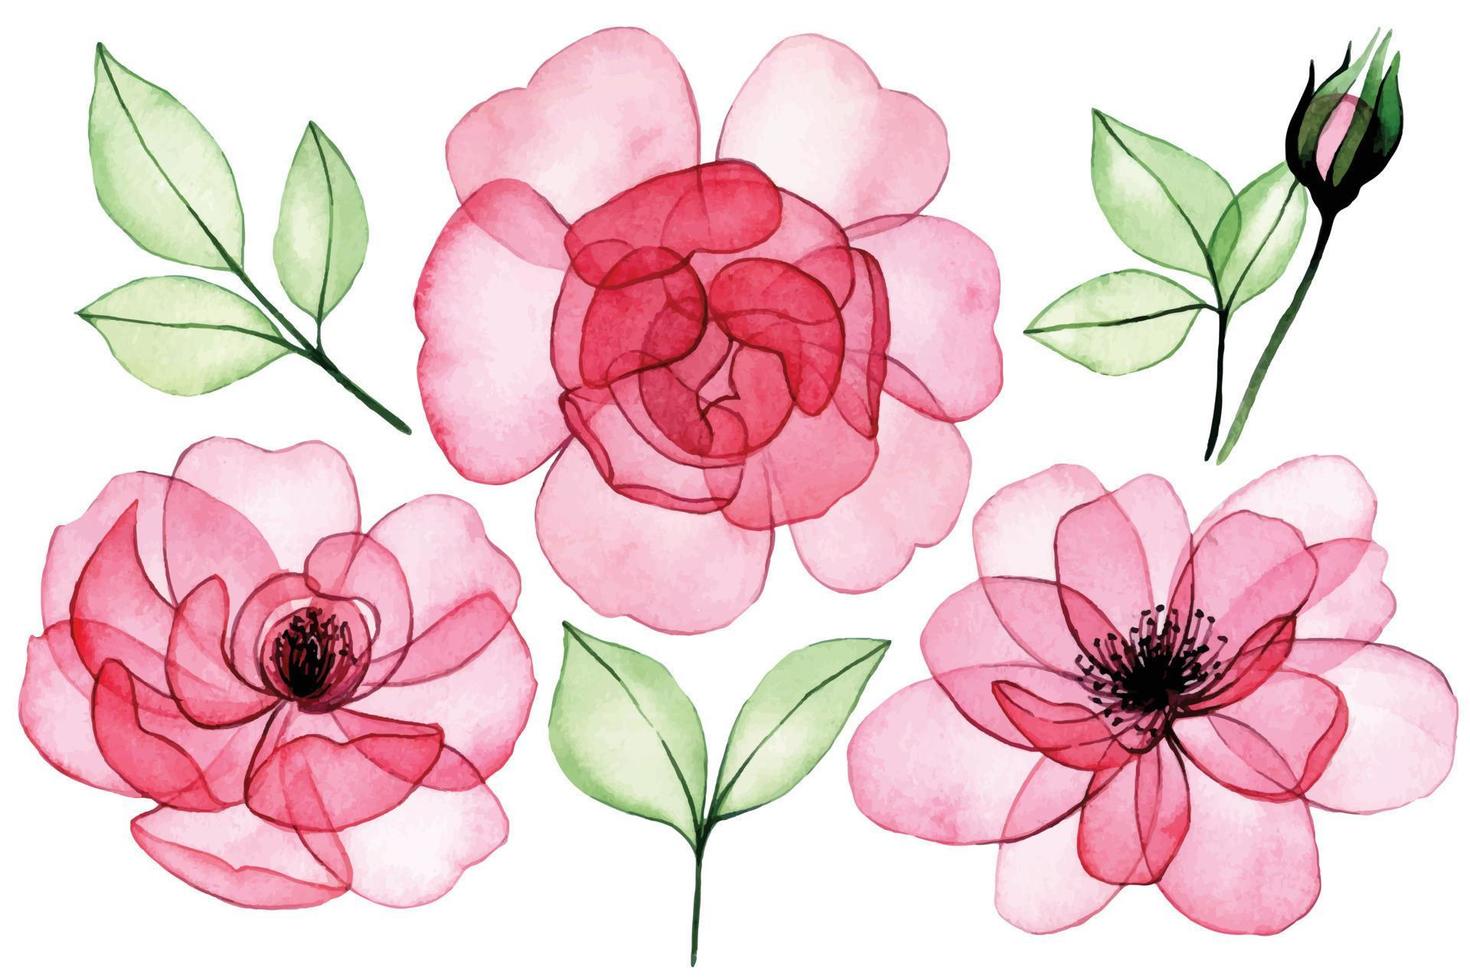 Aquarellzeichnung. satz transparente blumen, rosa rosen, knospen und blätter. Röntgen vektor